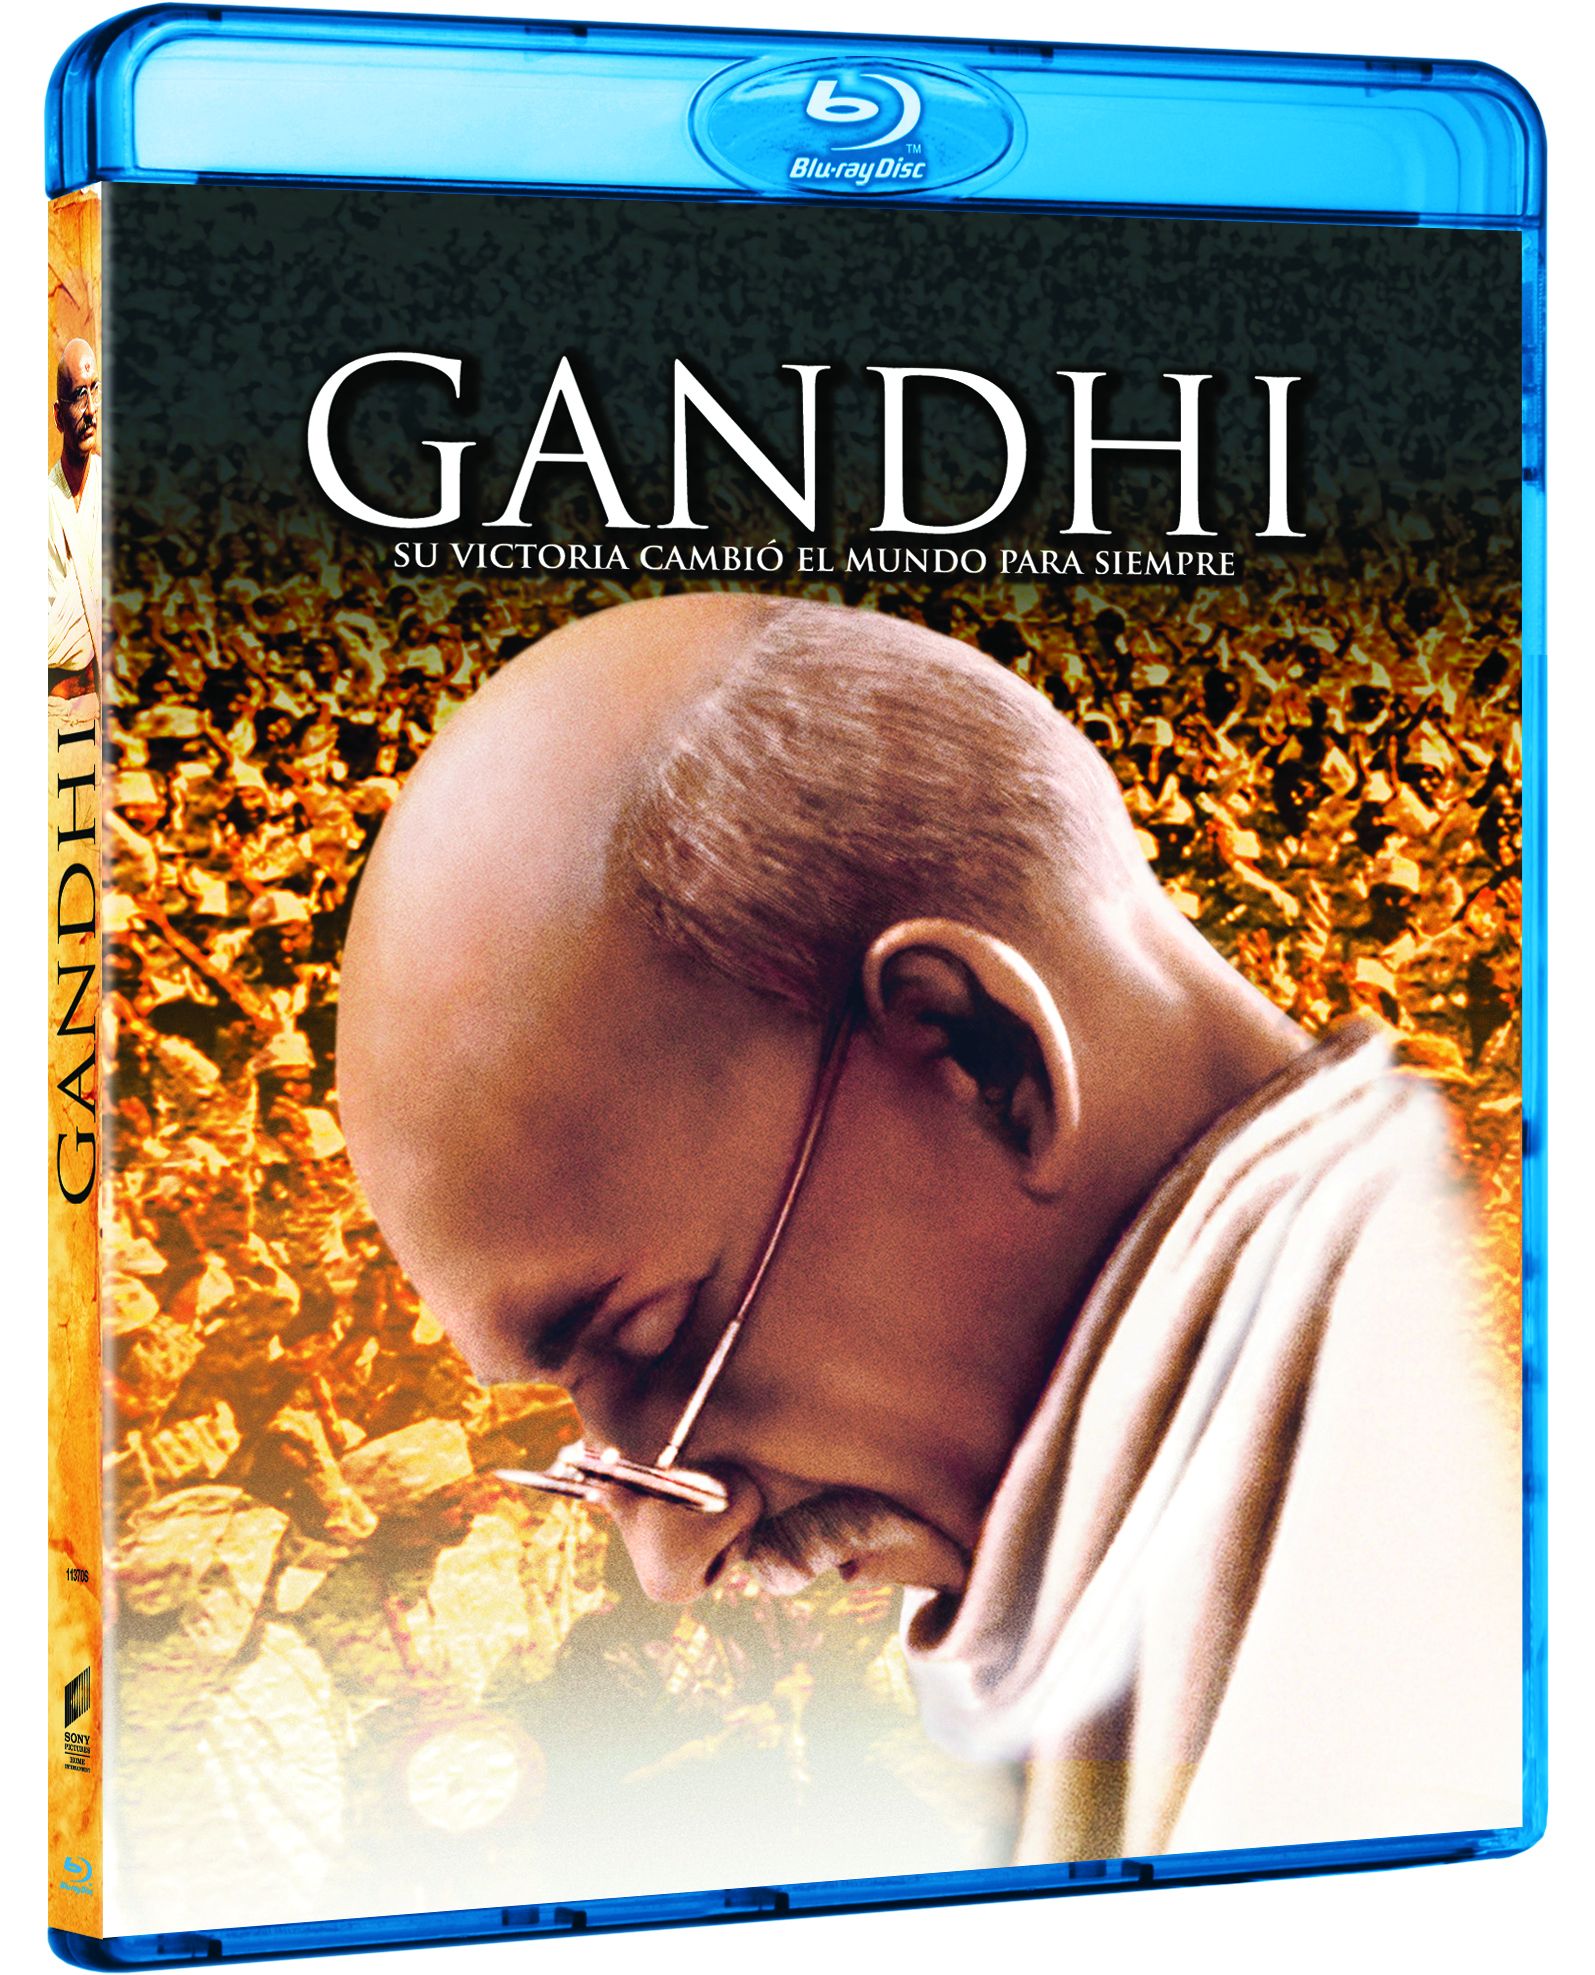 Pelicula De Gandhi Libre Soy Completa En Español